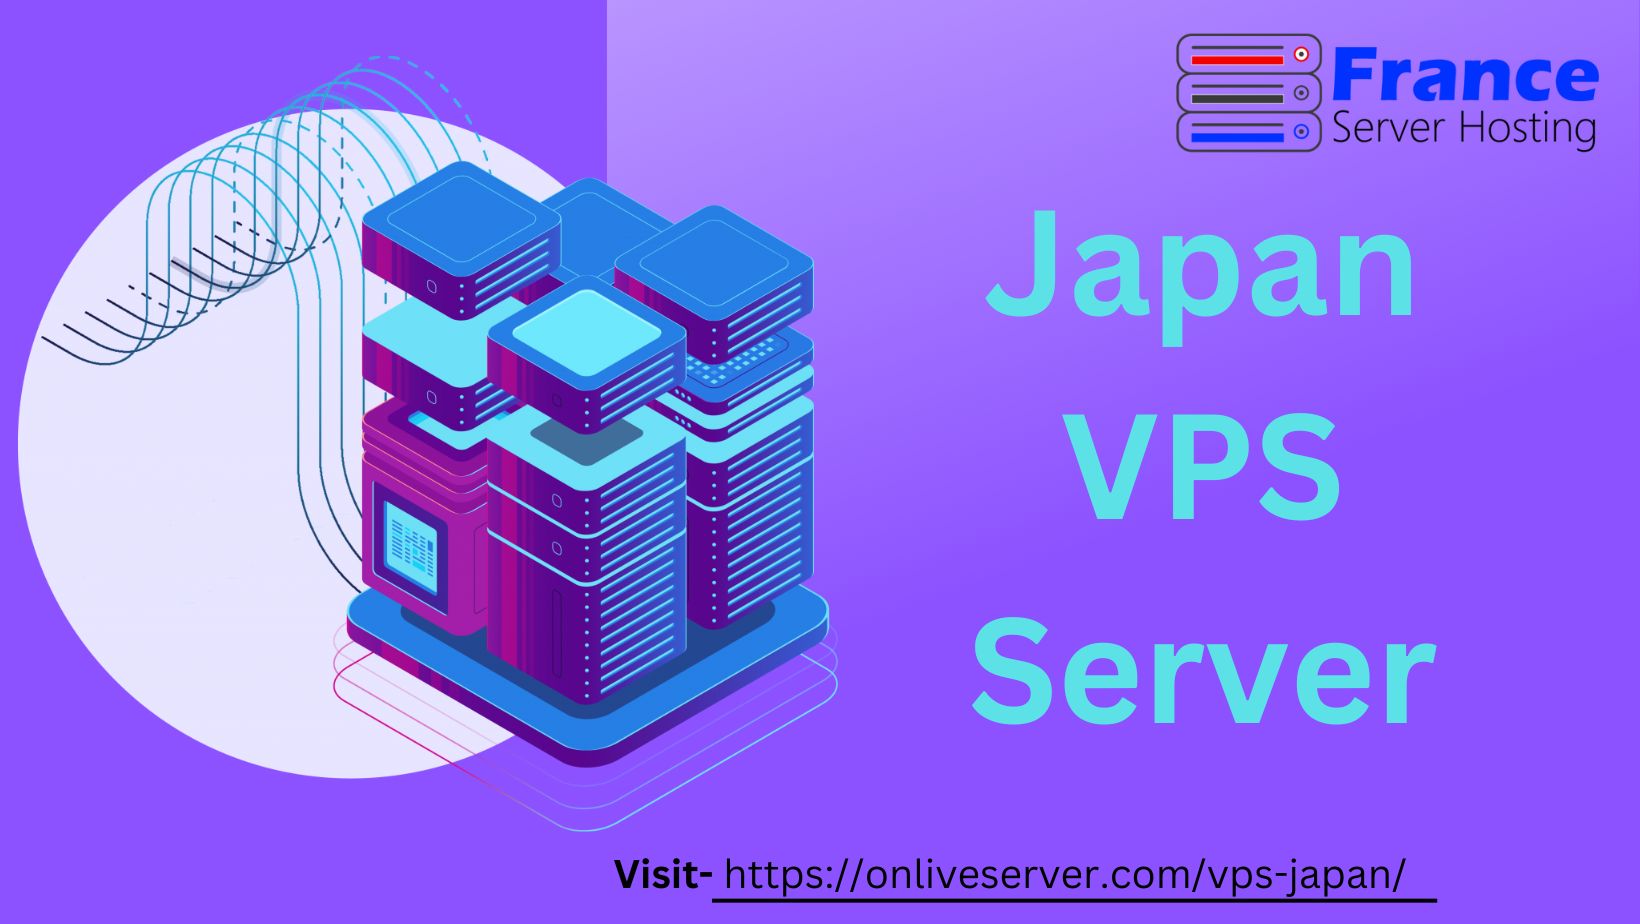 Japan VPS Server